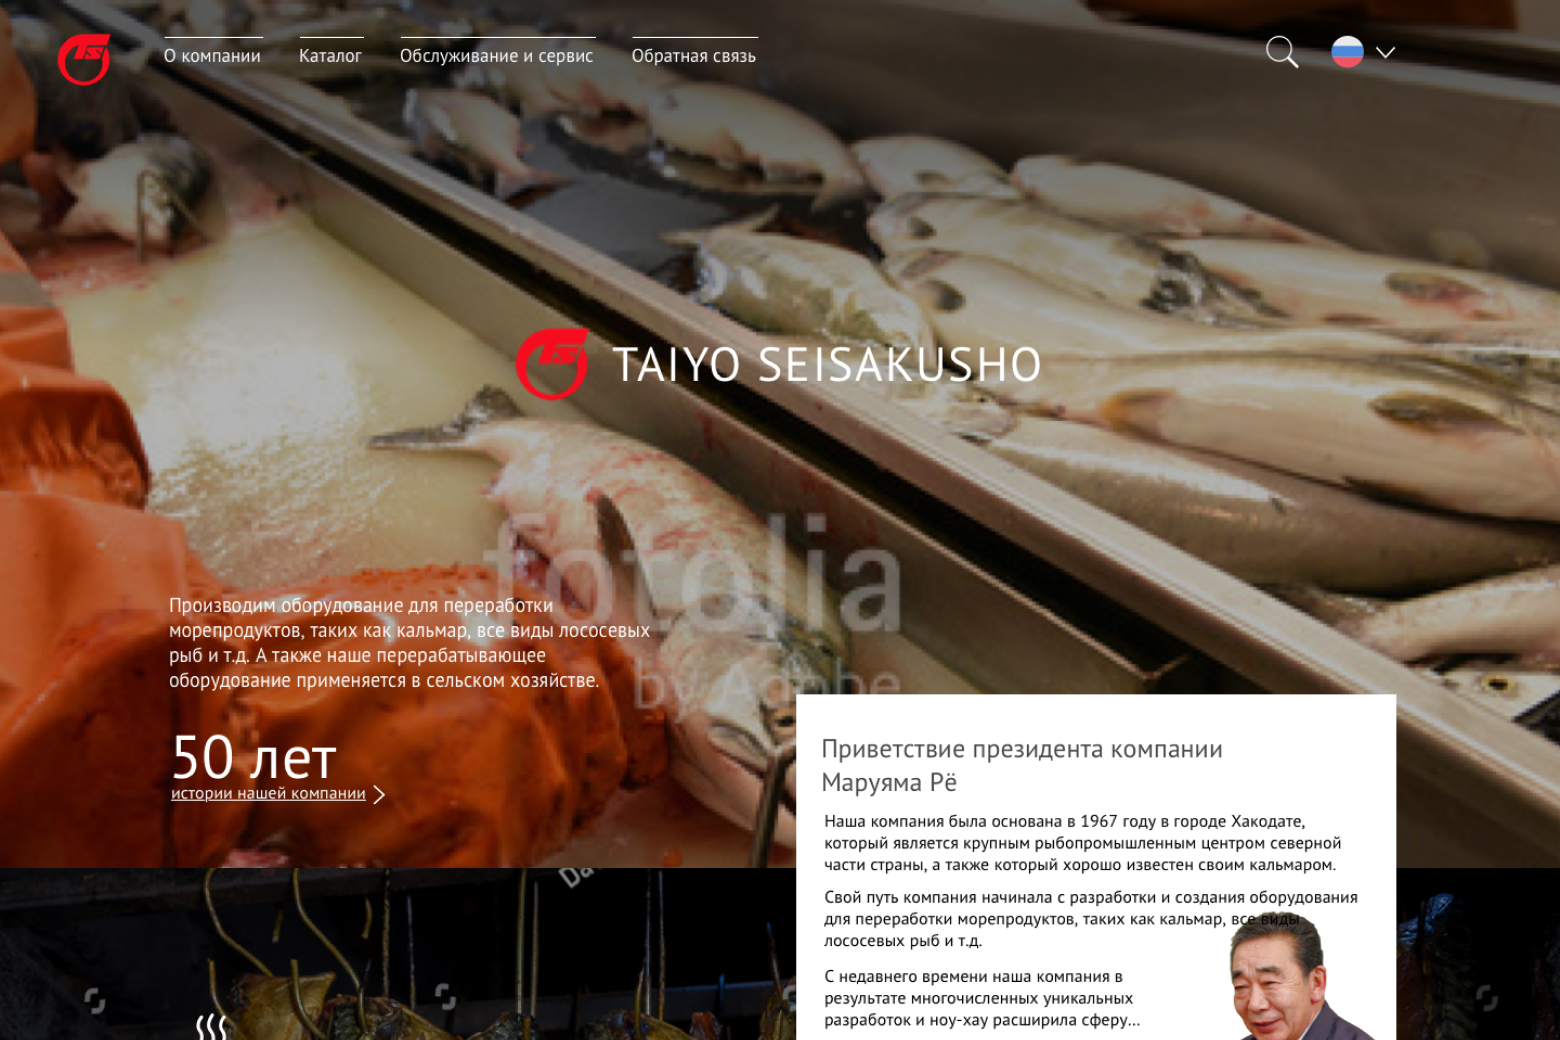 Дизайн сайта японской производственной компании Taiyo Seisakusho